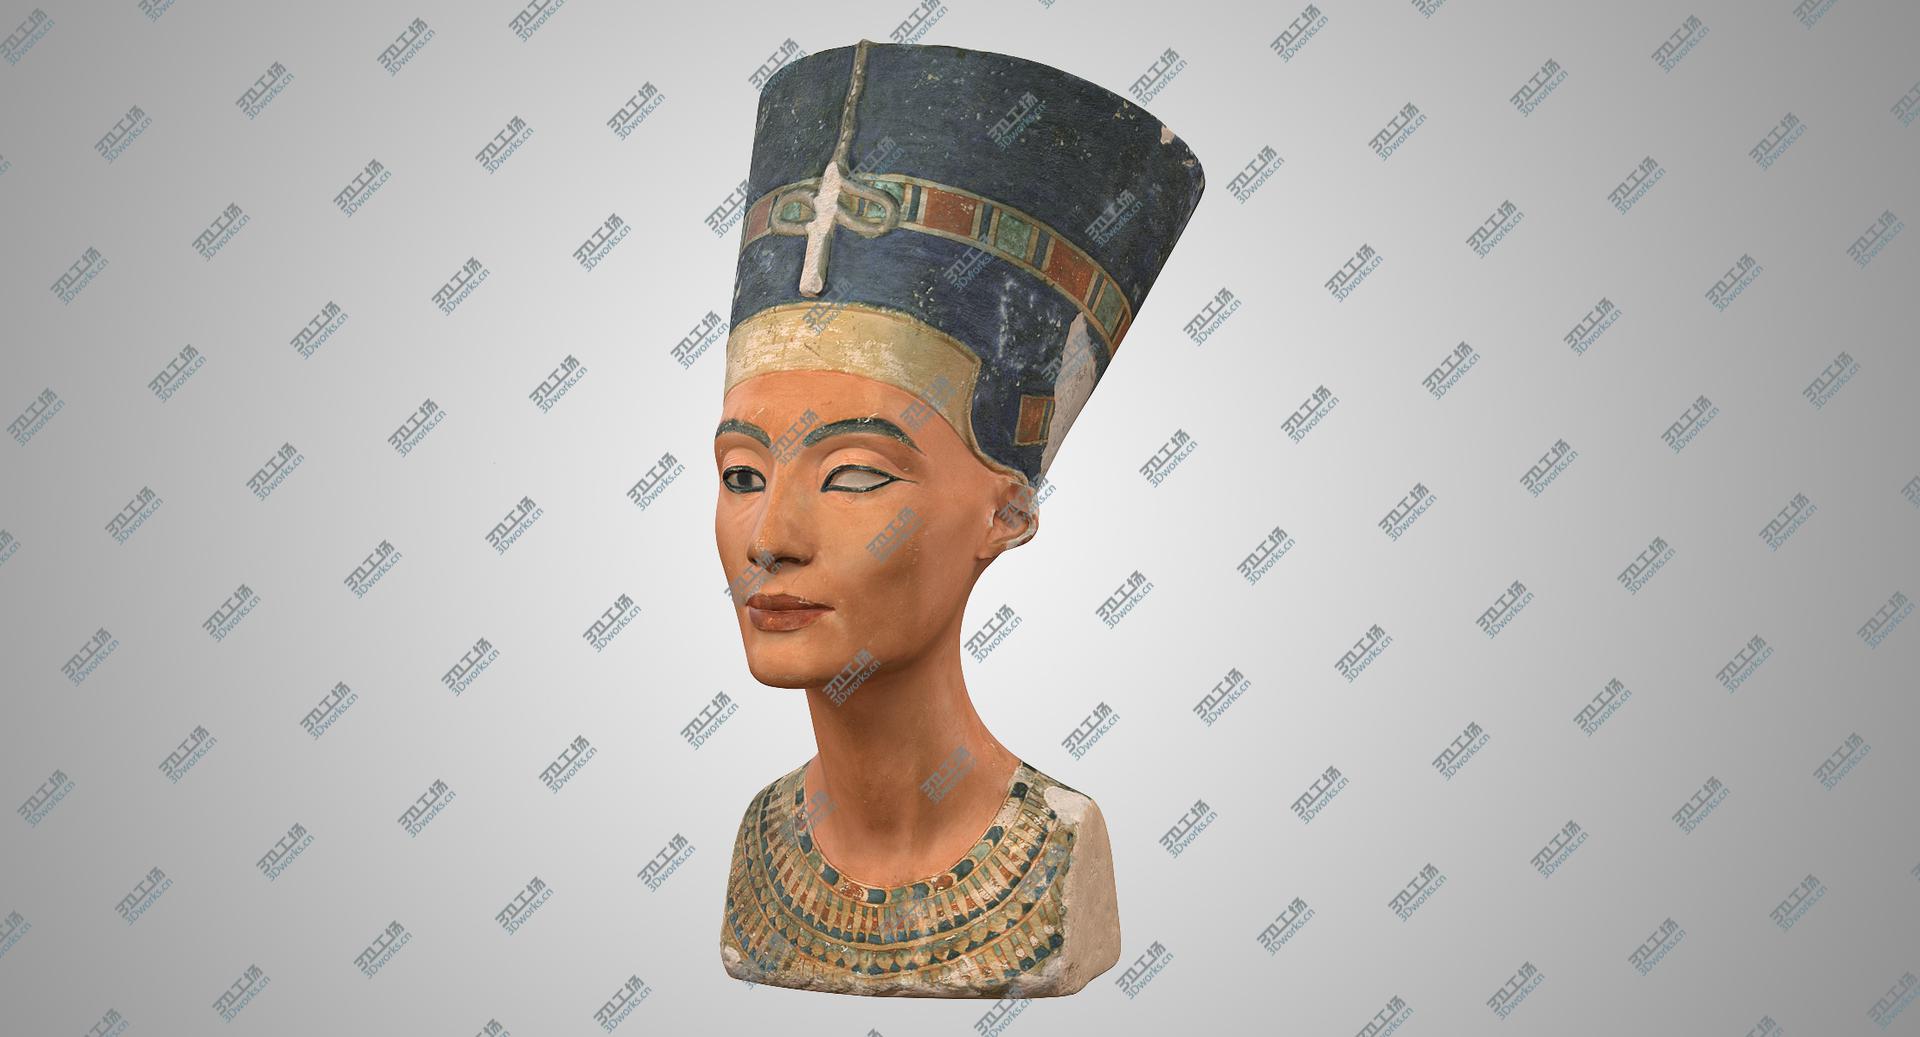 images/goods_img/2021040162/Nefertiti Bust 3D model/1.jpg